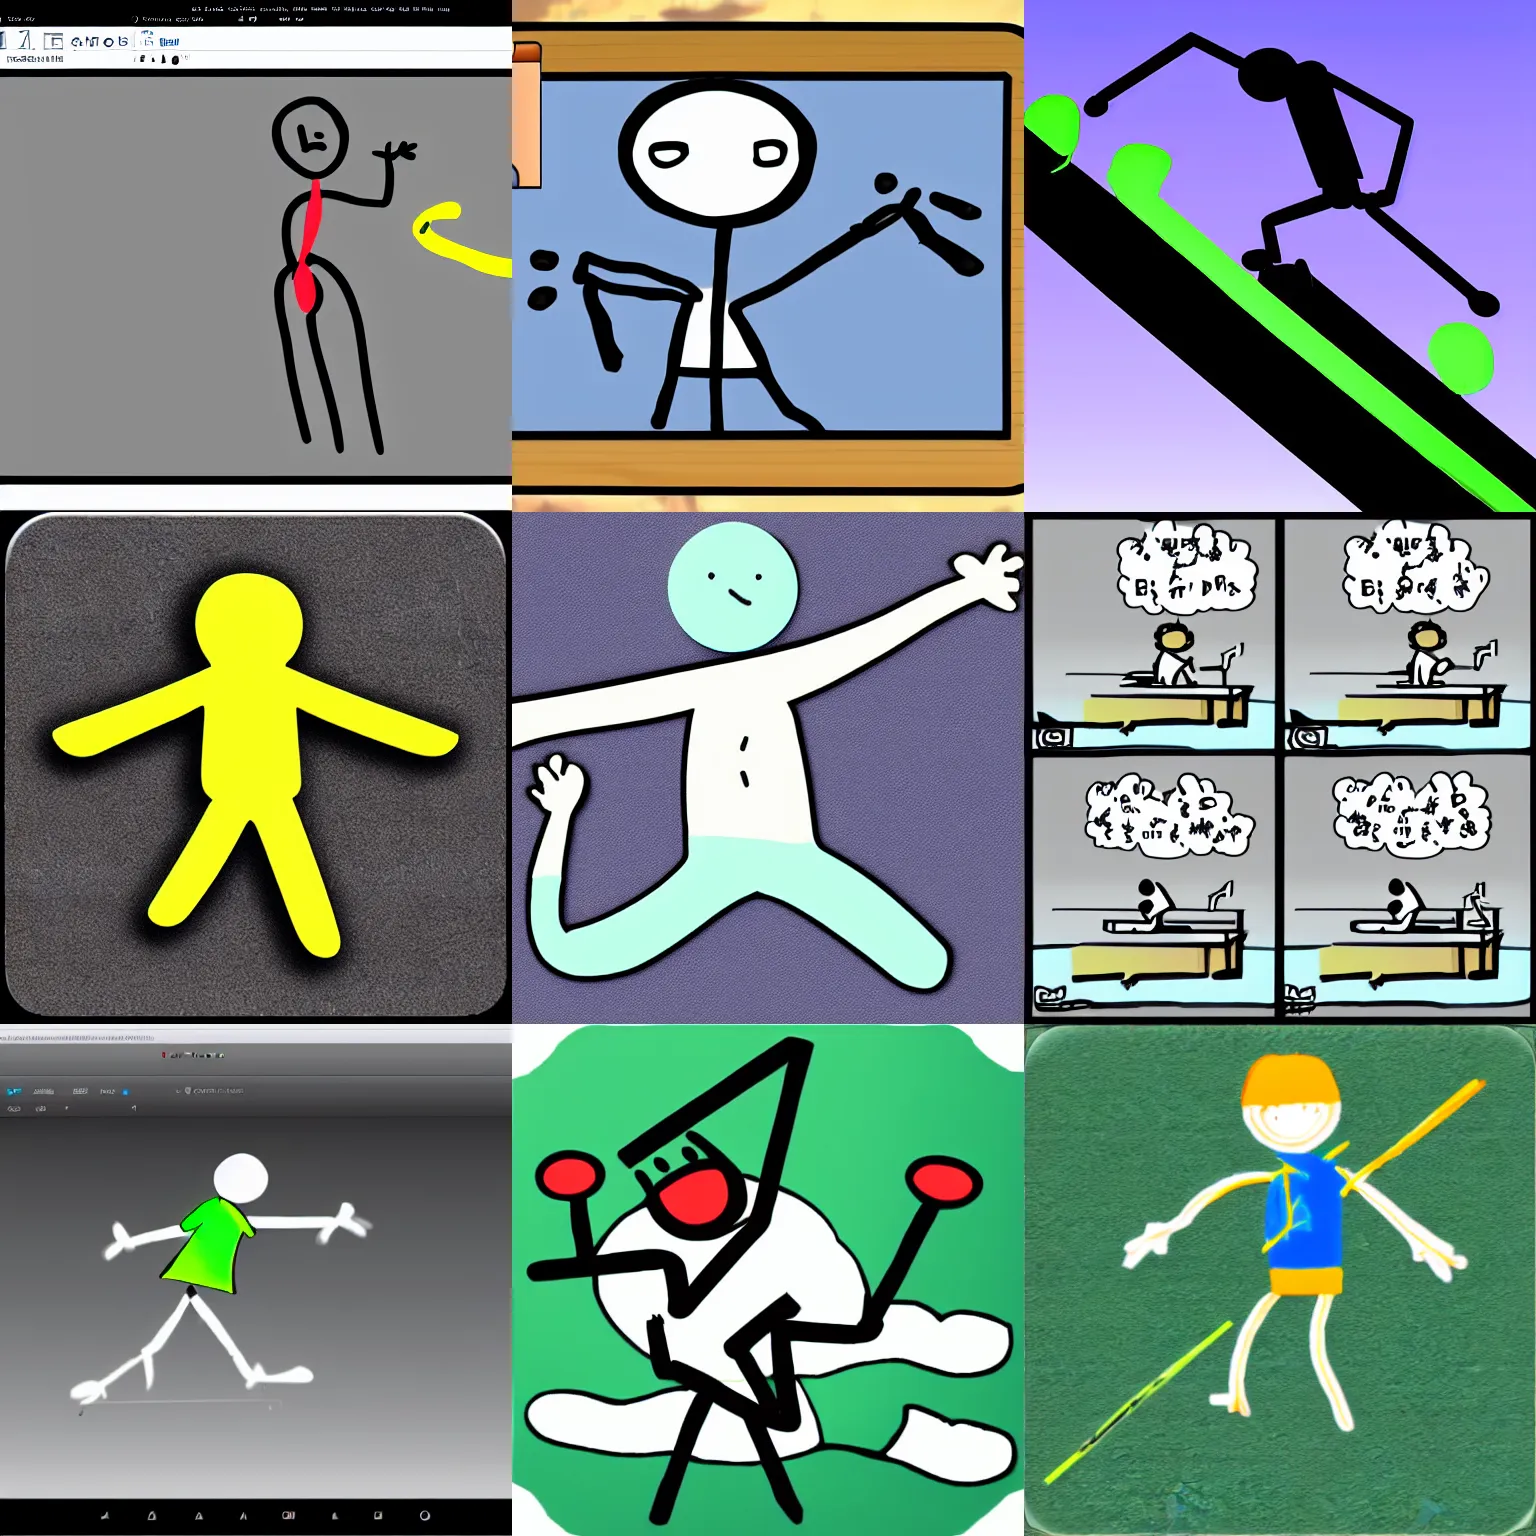 Pivot Stickfigure Animator. ( Cure summer boredom ) - Non-Ski Gabber 